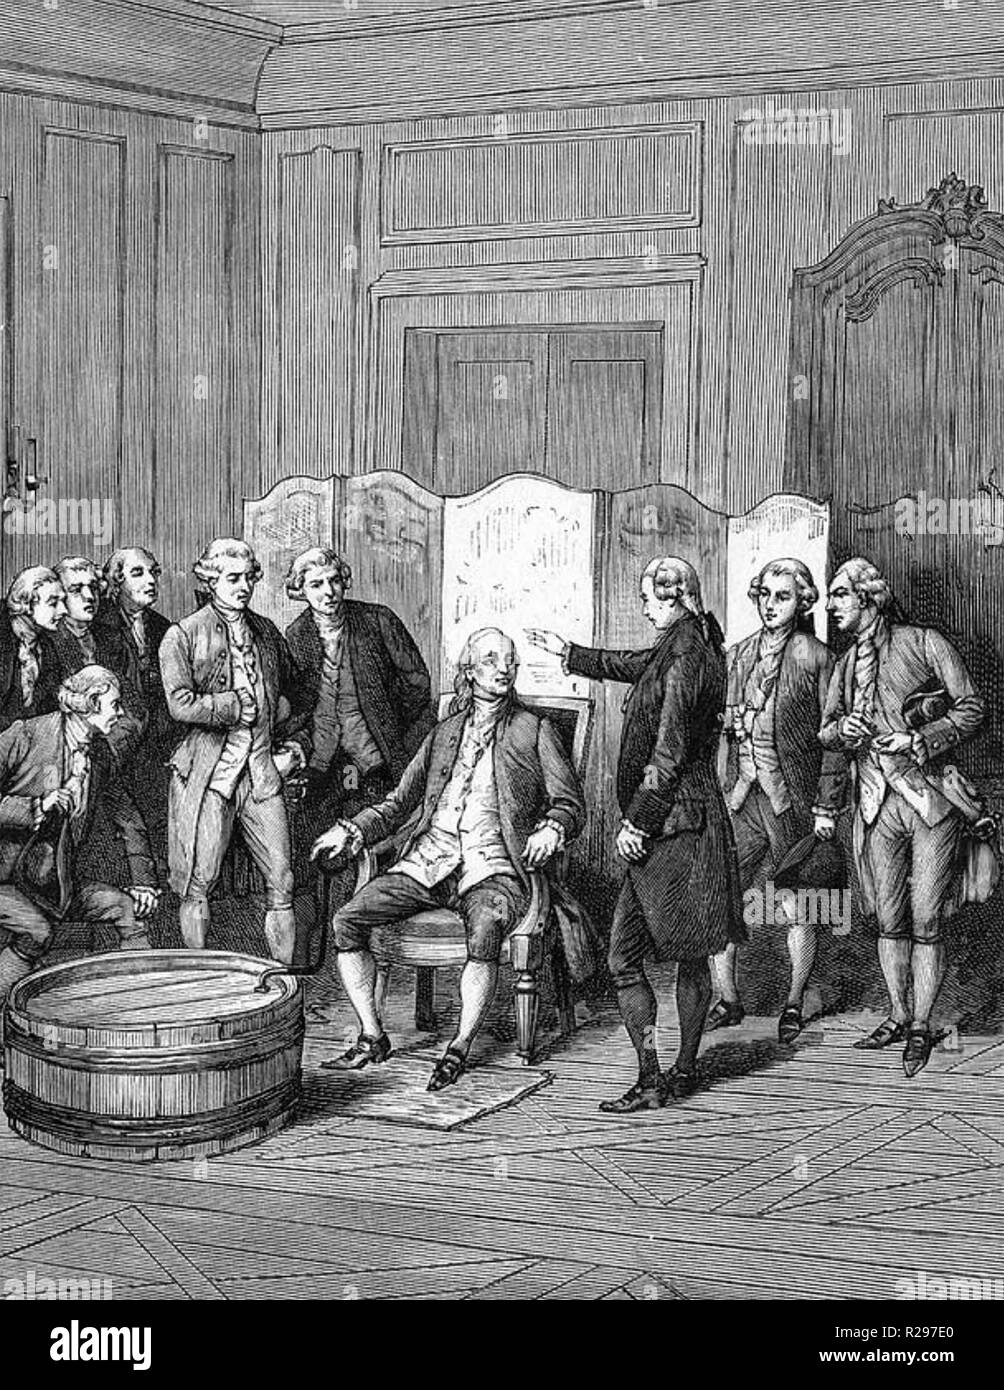 BENJAMIN FRANKLIN (1706-1790) que l'ambassadeur américain à sa résidence française à Passy est l'objet d'un "animal magnetism" expérience menée par Charles d'Ellon au nom d'Anton Mesmer Banque D'Images